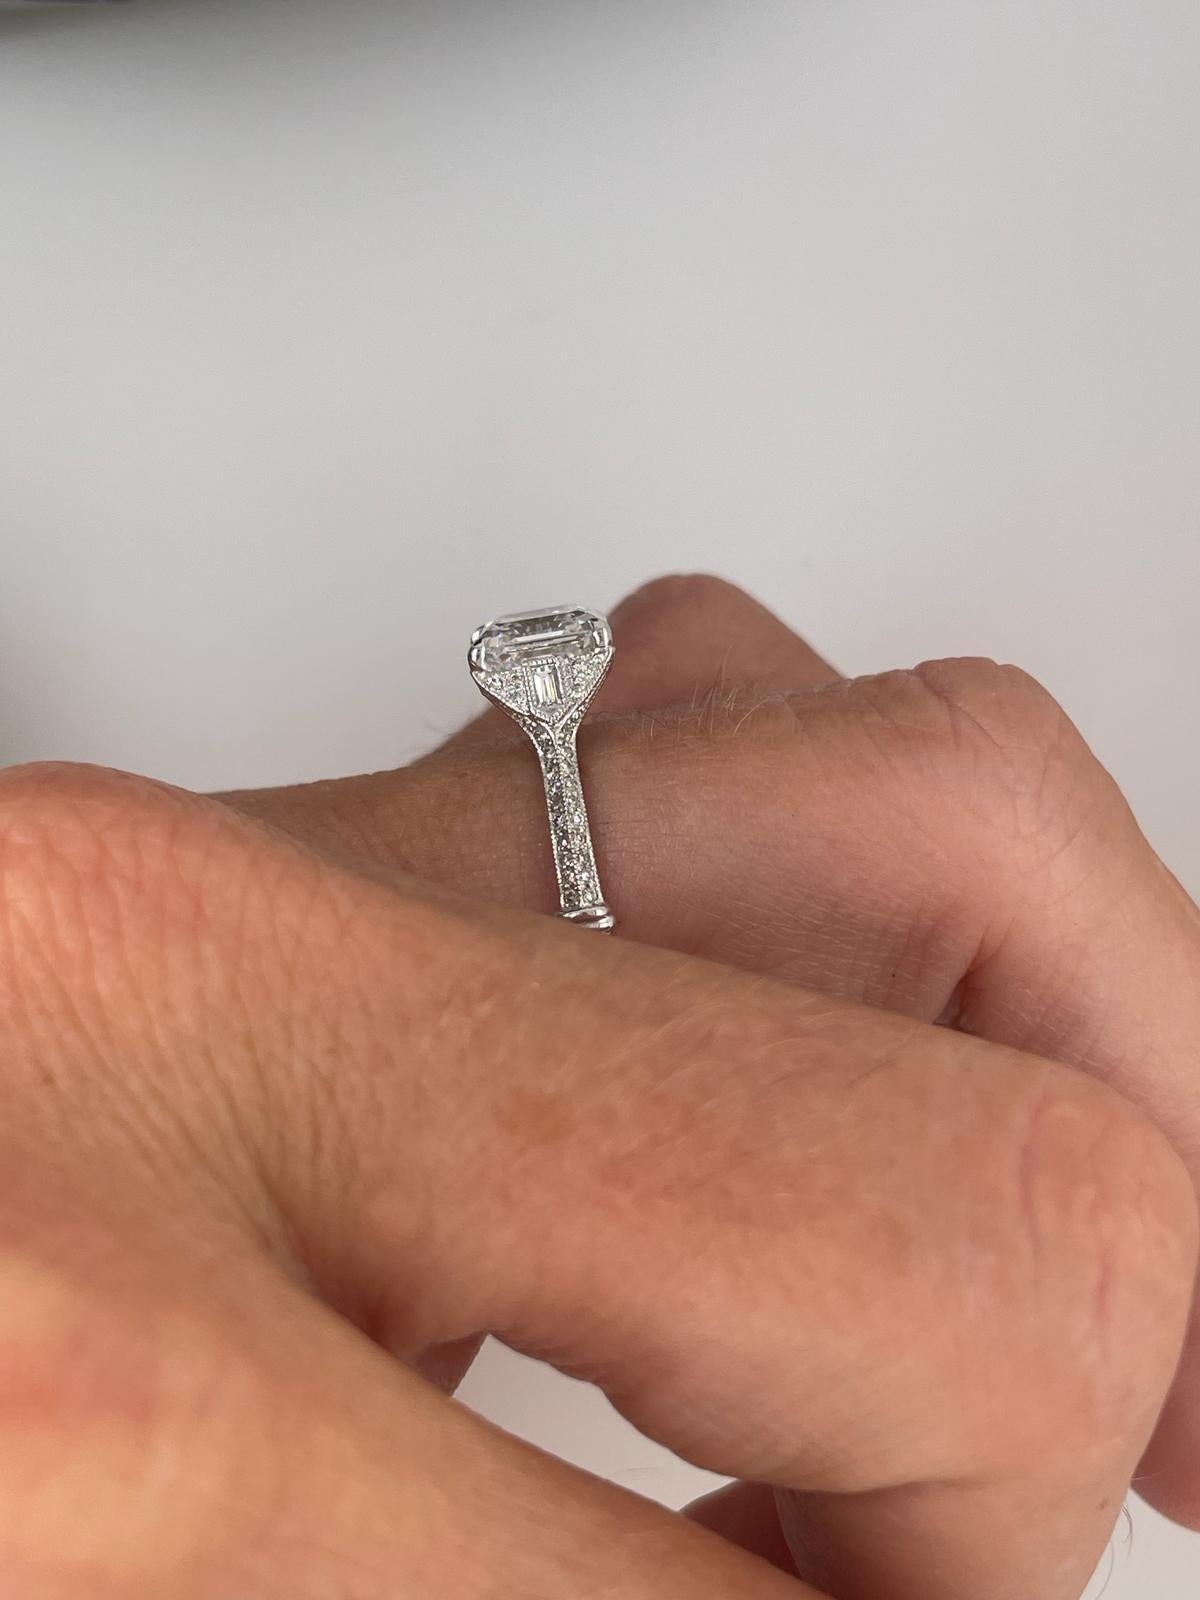 For Sale:  2ct Art Deco asscher cut diamond ring 15